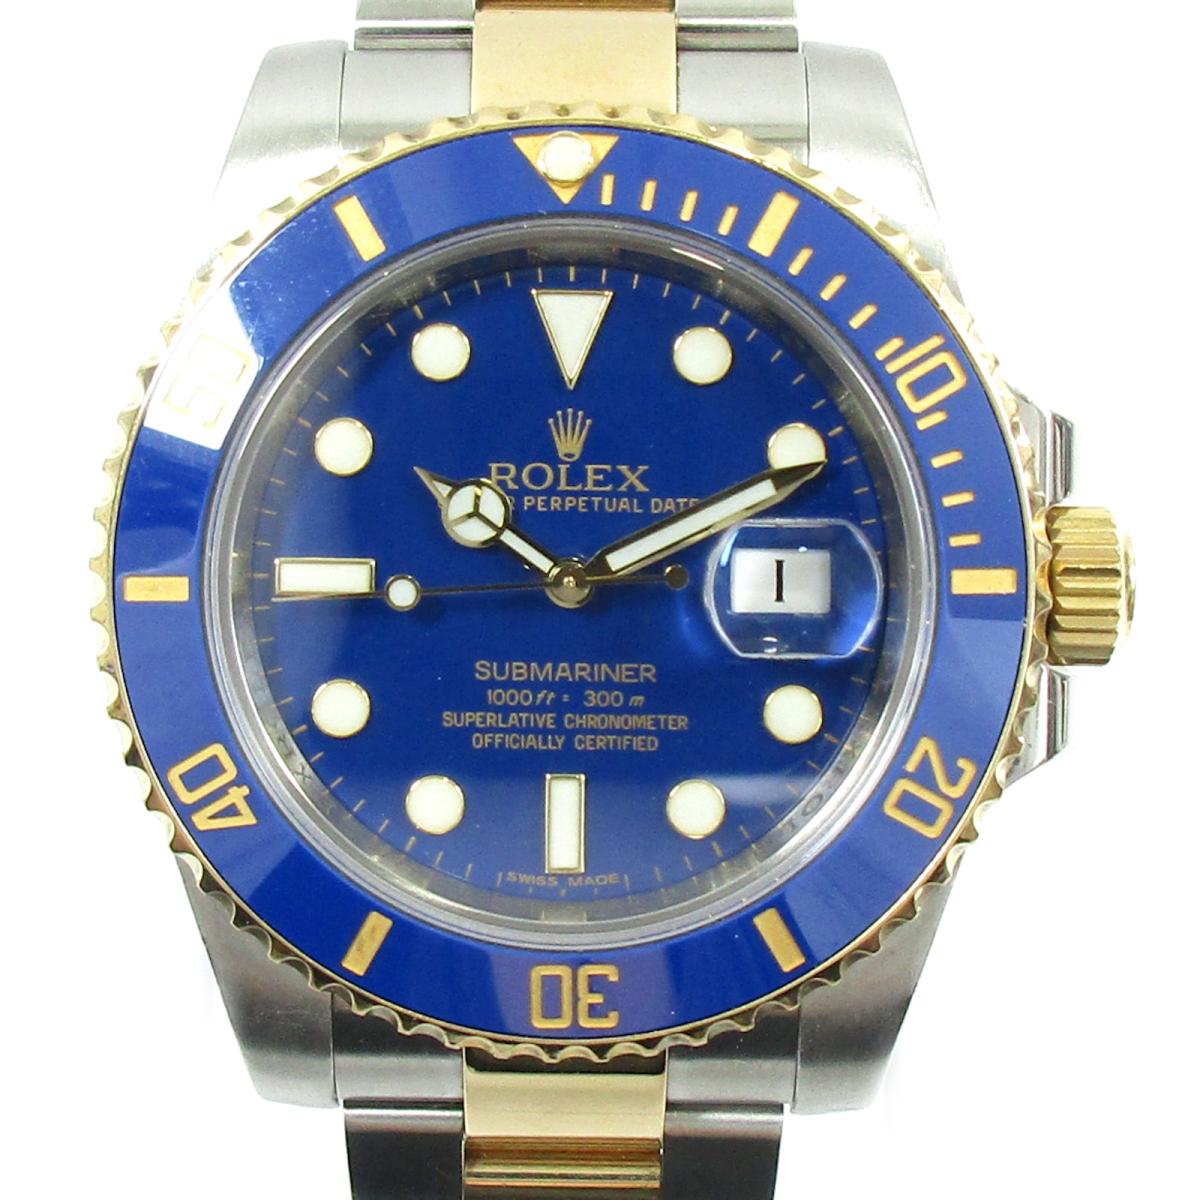 ロレックス サブマリーナ 腕時計 ウォッチ 時計 メンズ K18YG (750) イエローゴールド x ステンレススチール (SS) ゴールド シルバー ブルー (116613LB)